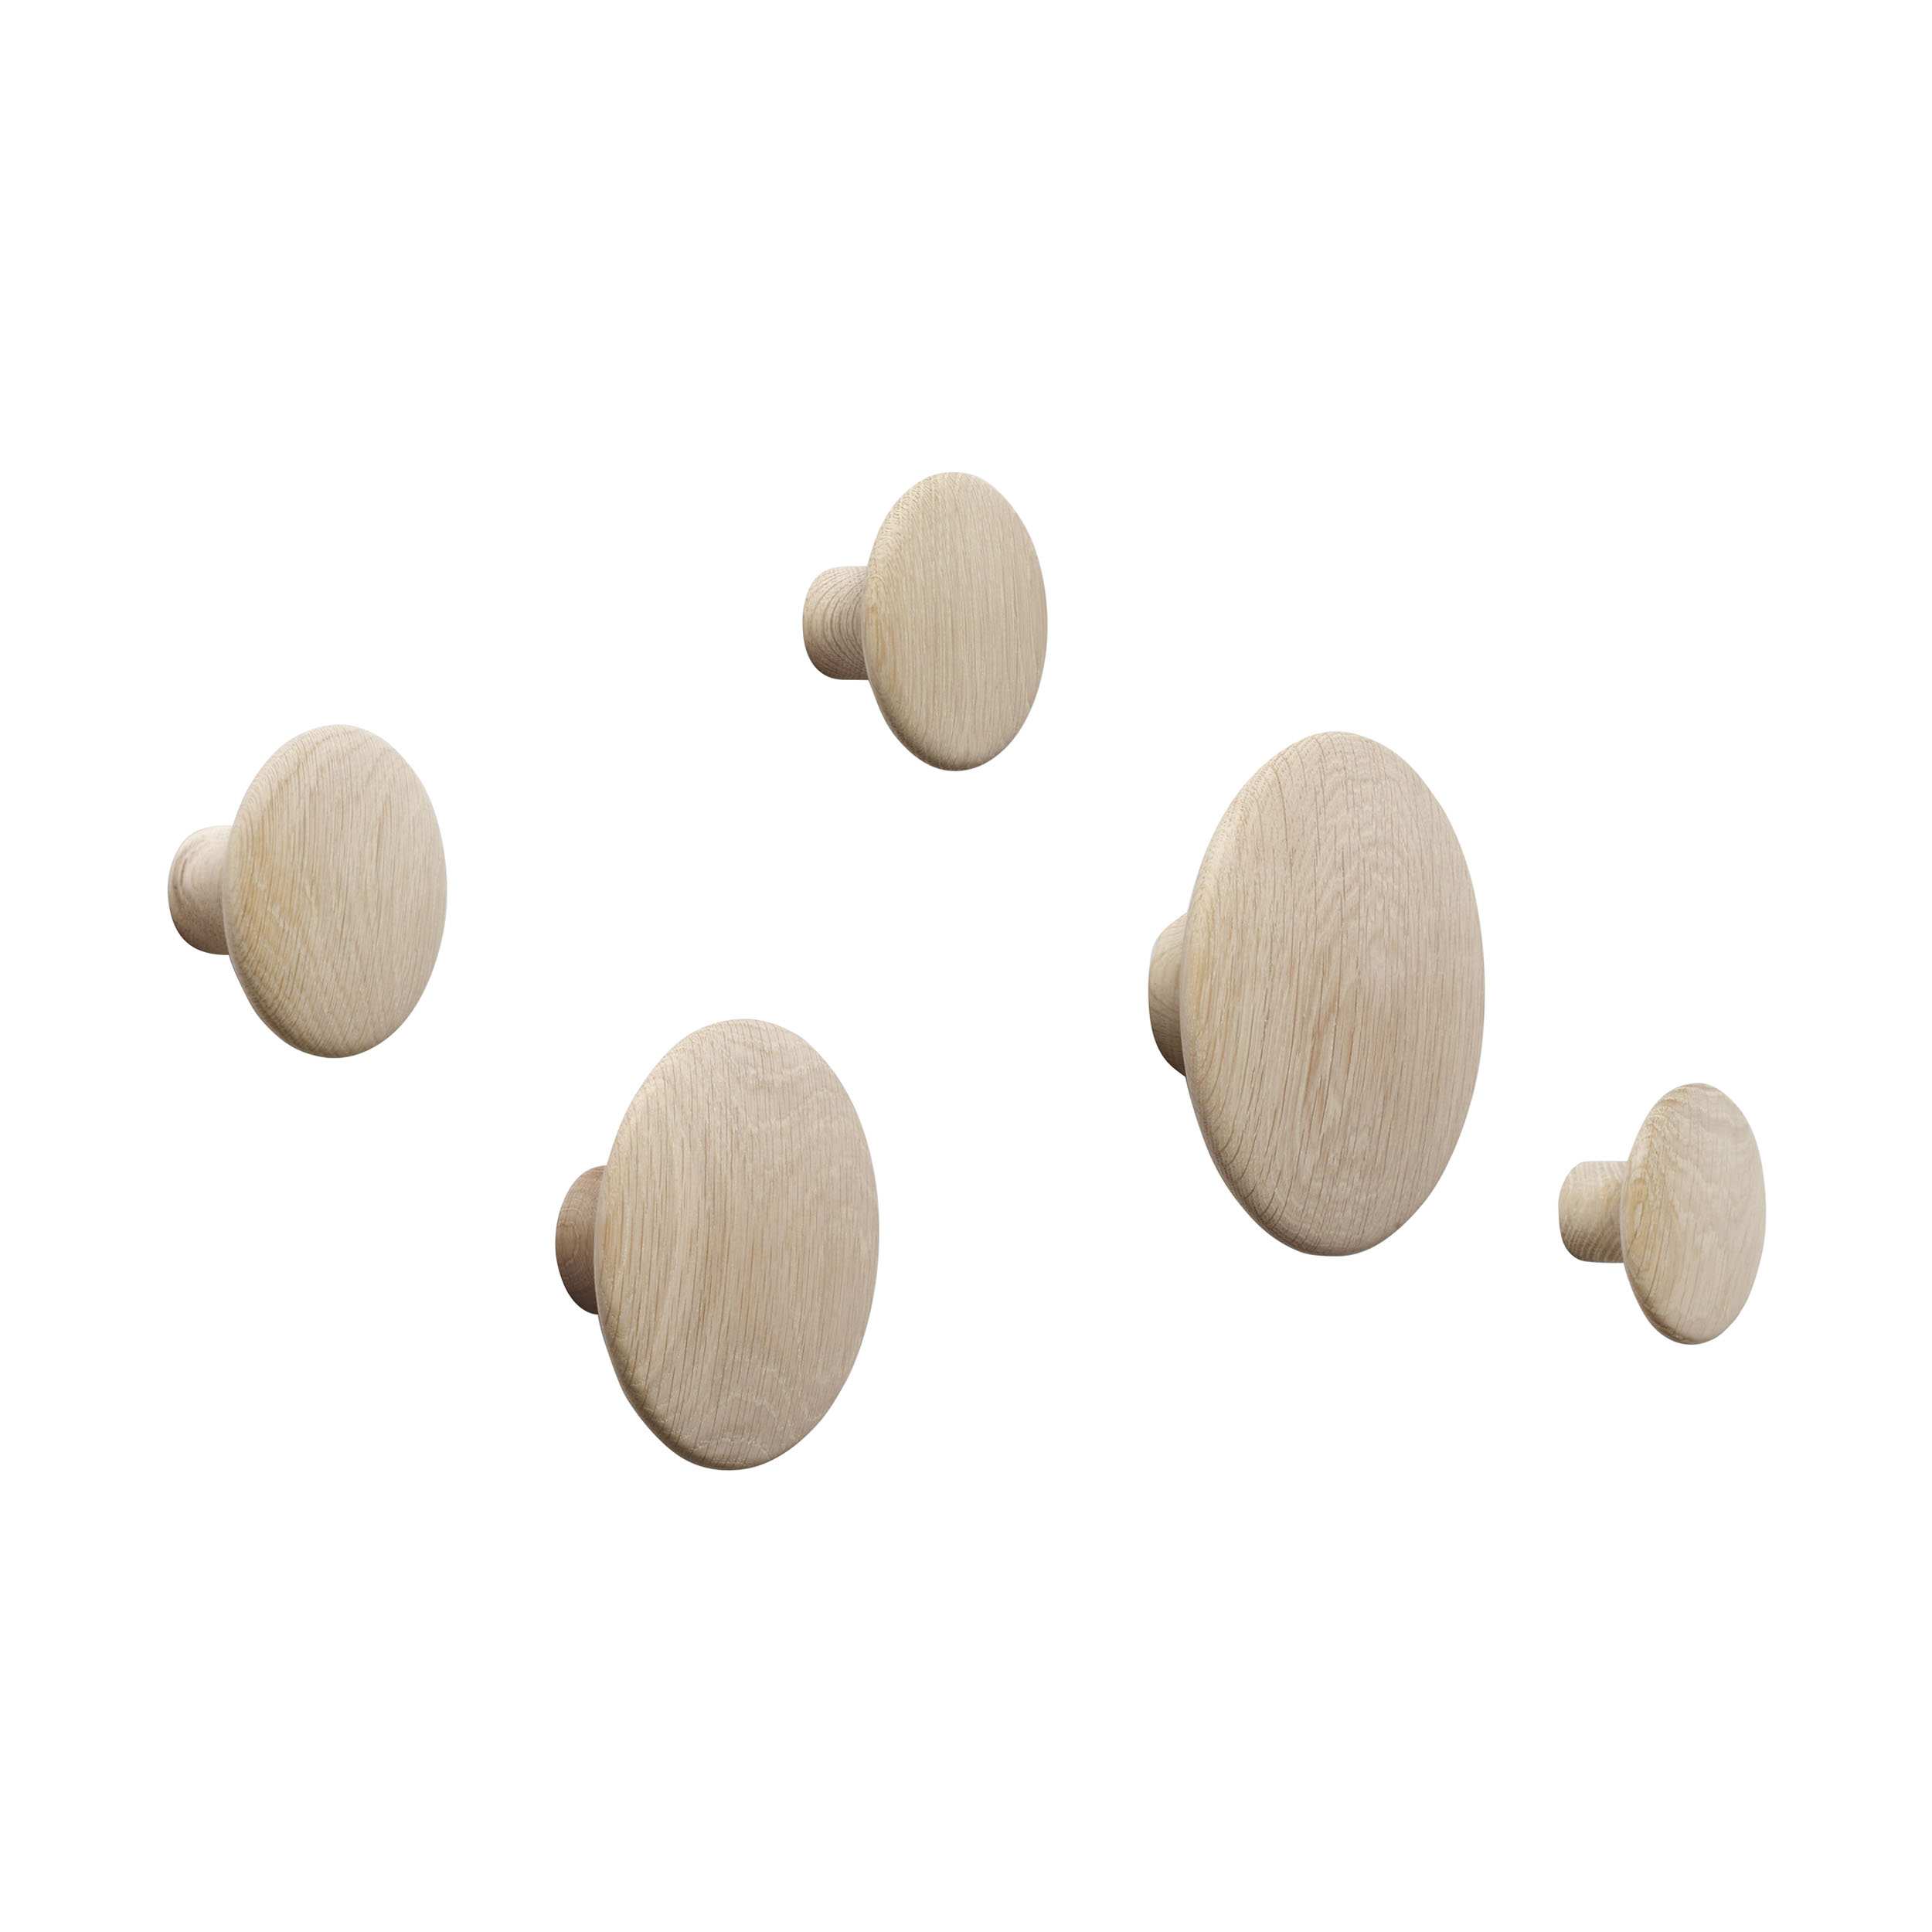 The Dots Wood Garderobenhaken 5er-Set